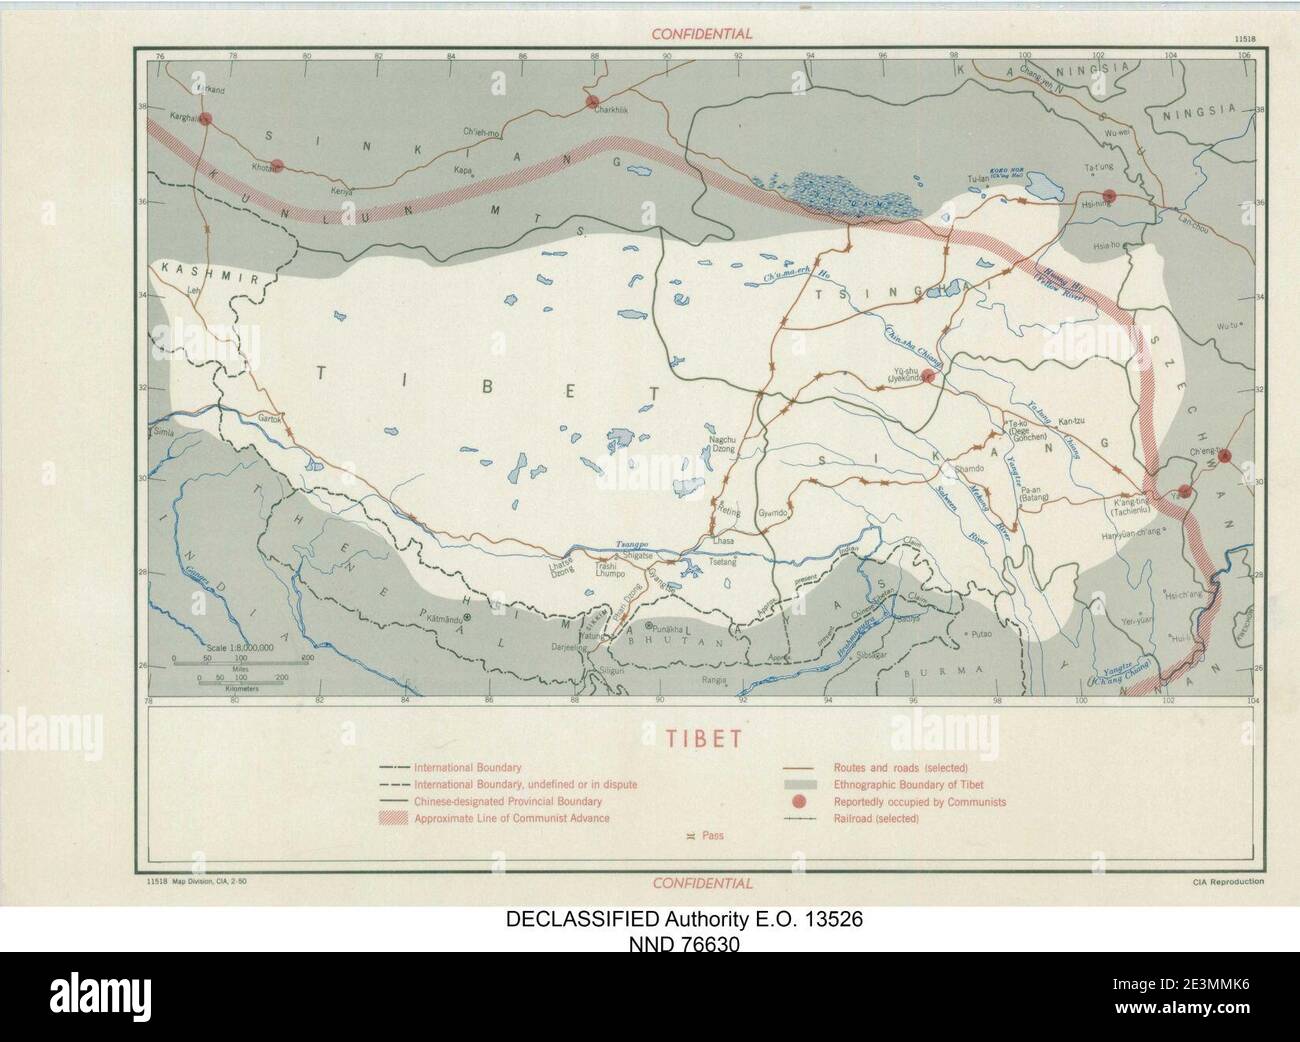 Mapa del Tíbet- ''TIBET CONFIDENCIAL'' ''límite etnográfico del Tíbet''''línea aproximada del avance comunista'' y ''supuestamente ocupado por comunistas'''''11518, CIA, 2-50''' Febrero 1950 mapa- 305945 11518 01. Foto de stock